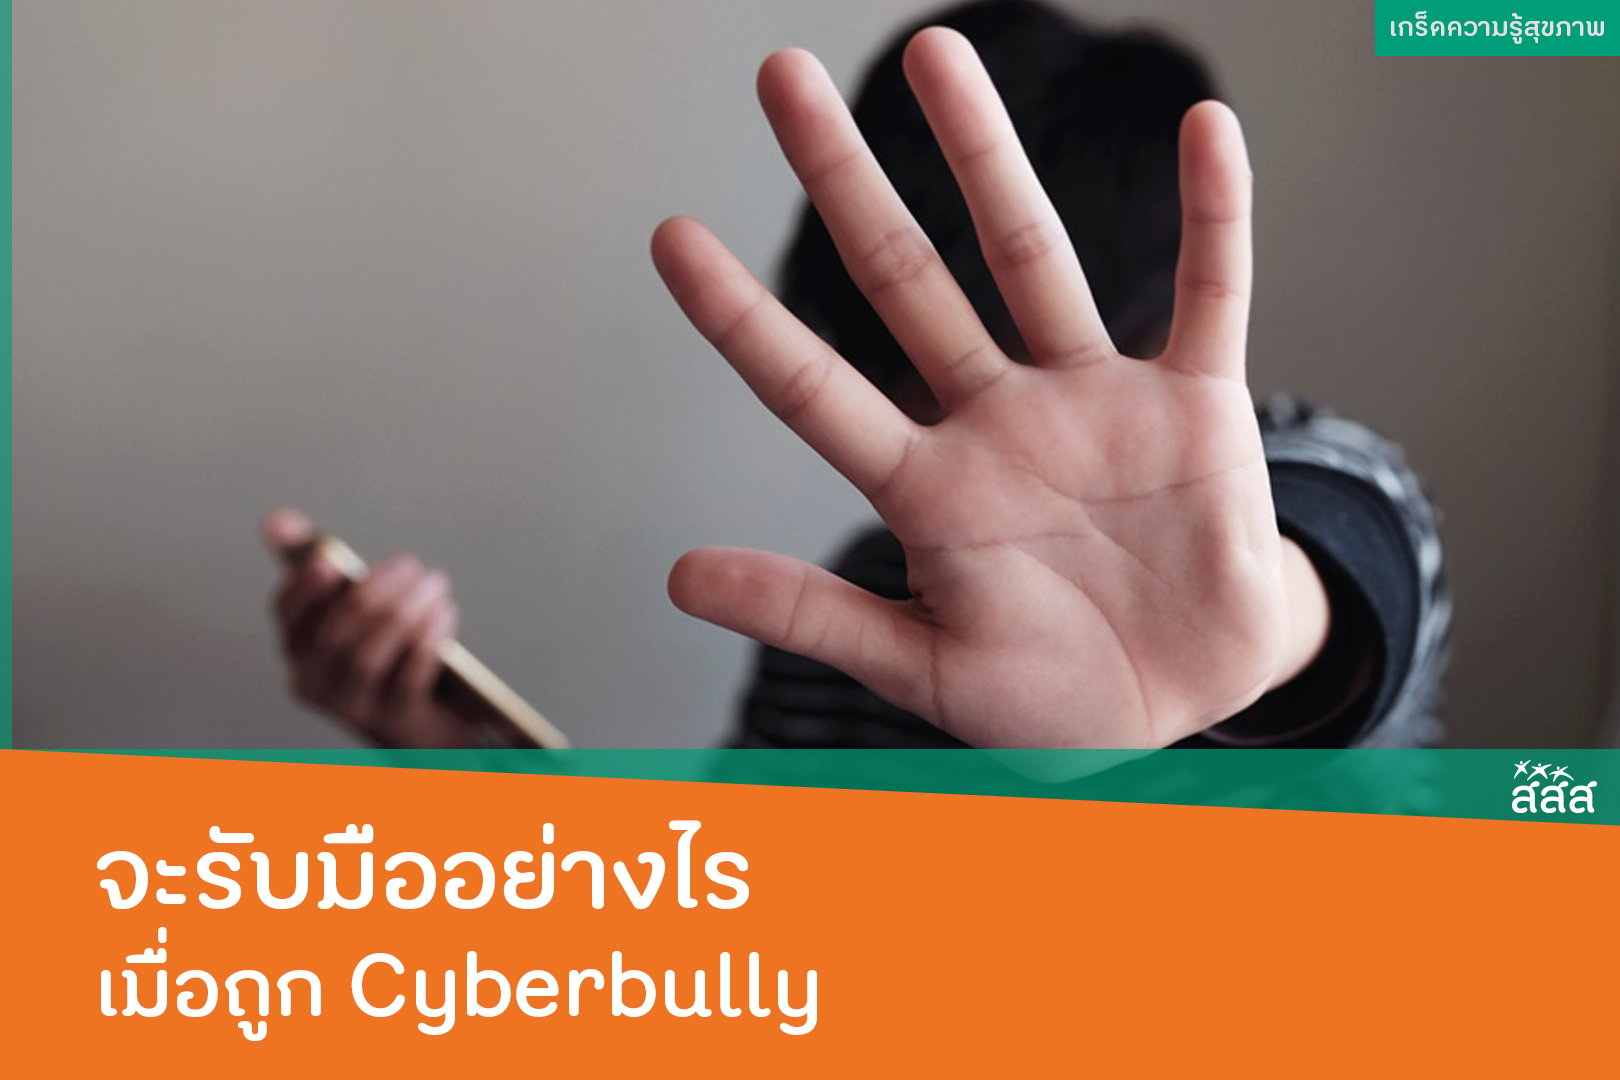 จะรับมืออย่างไร เมื่อถูก Cyberbully thaihealth